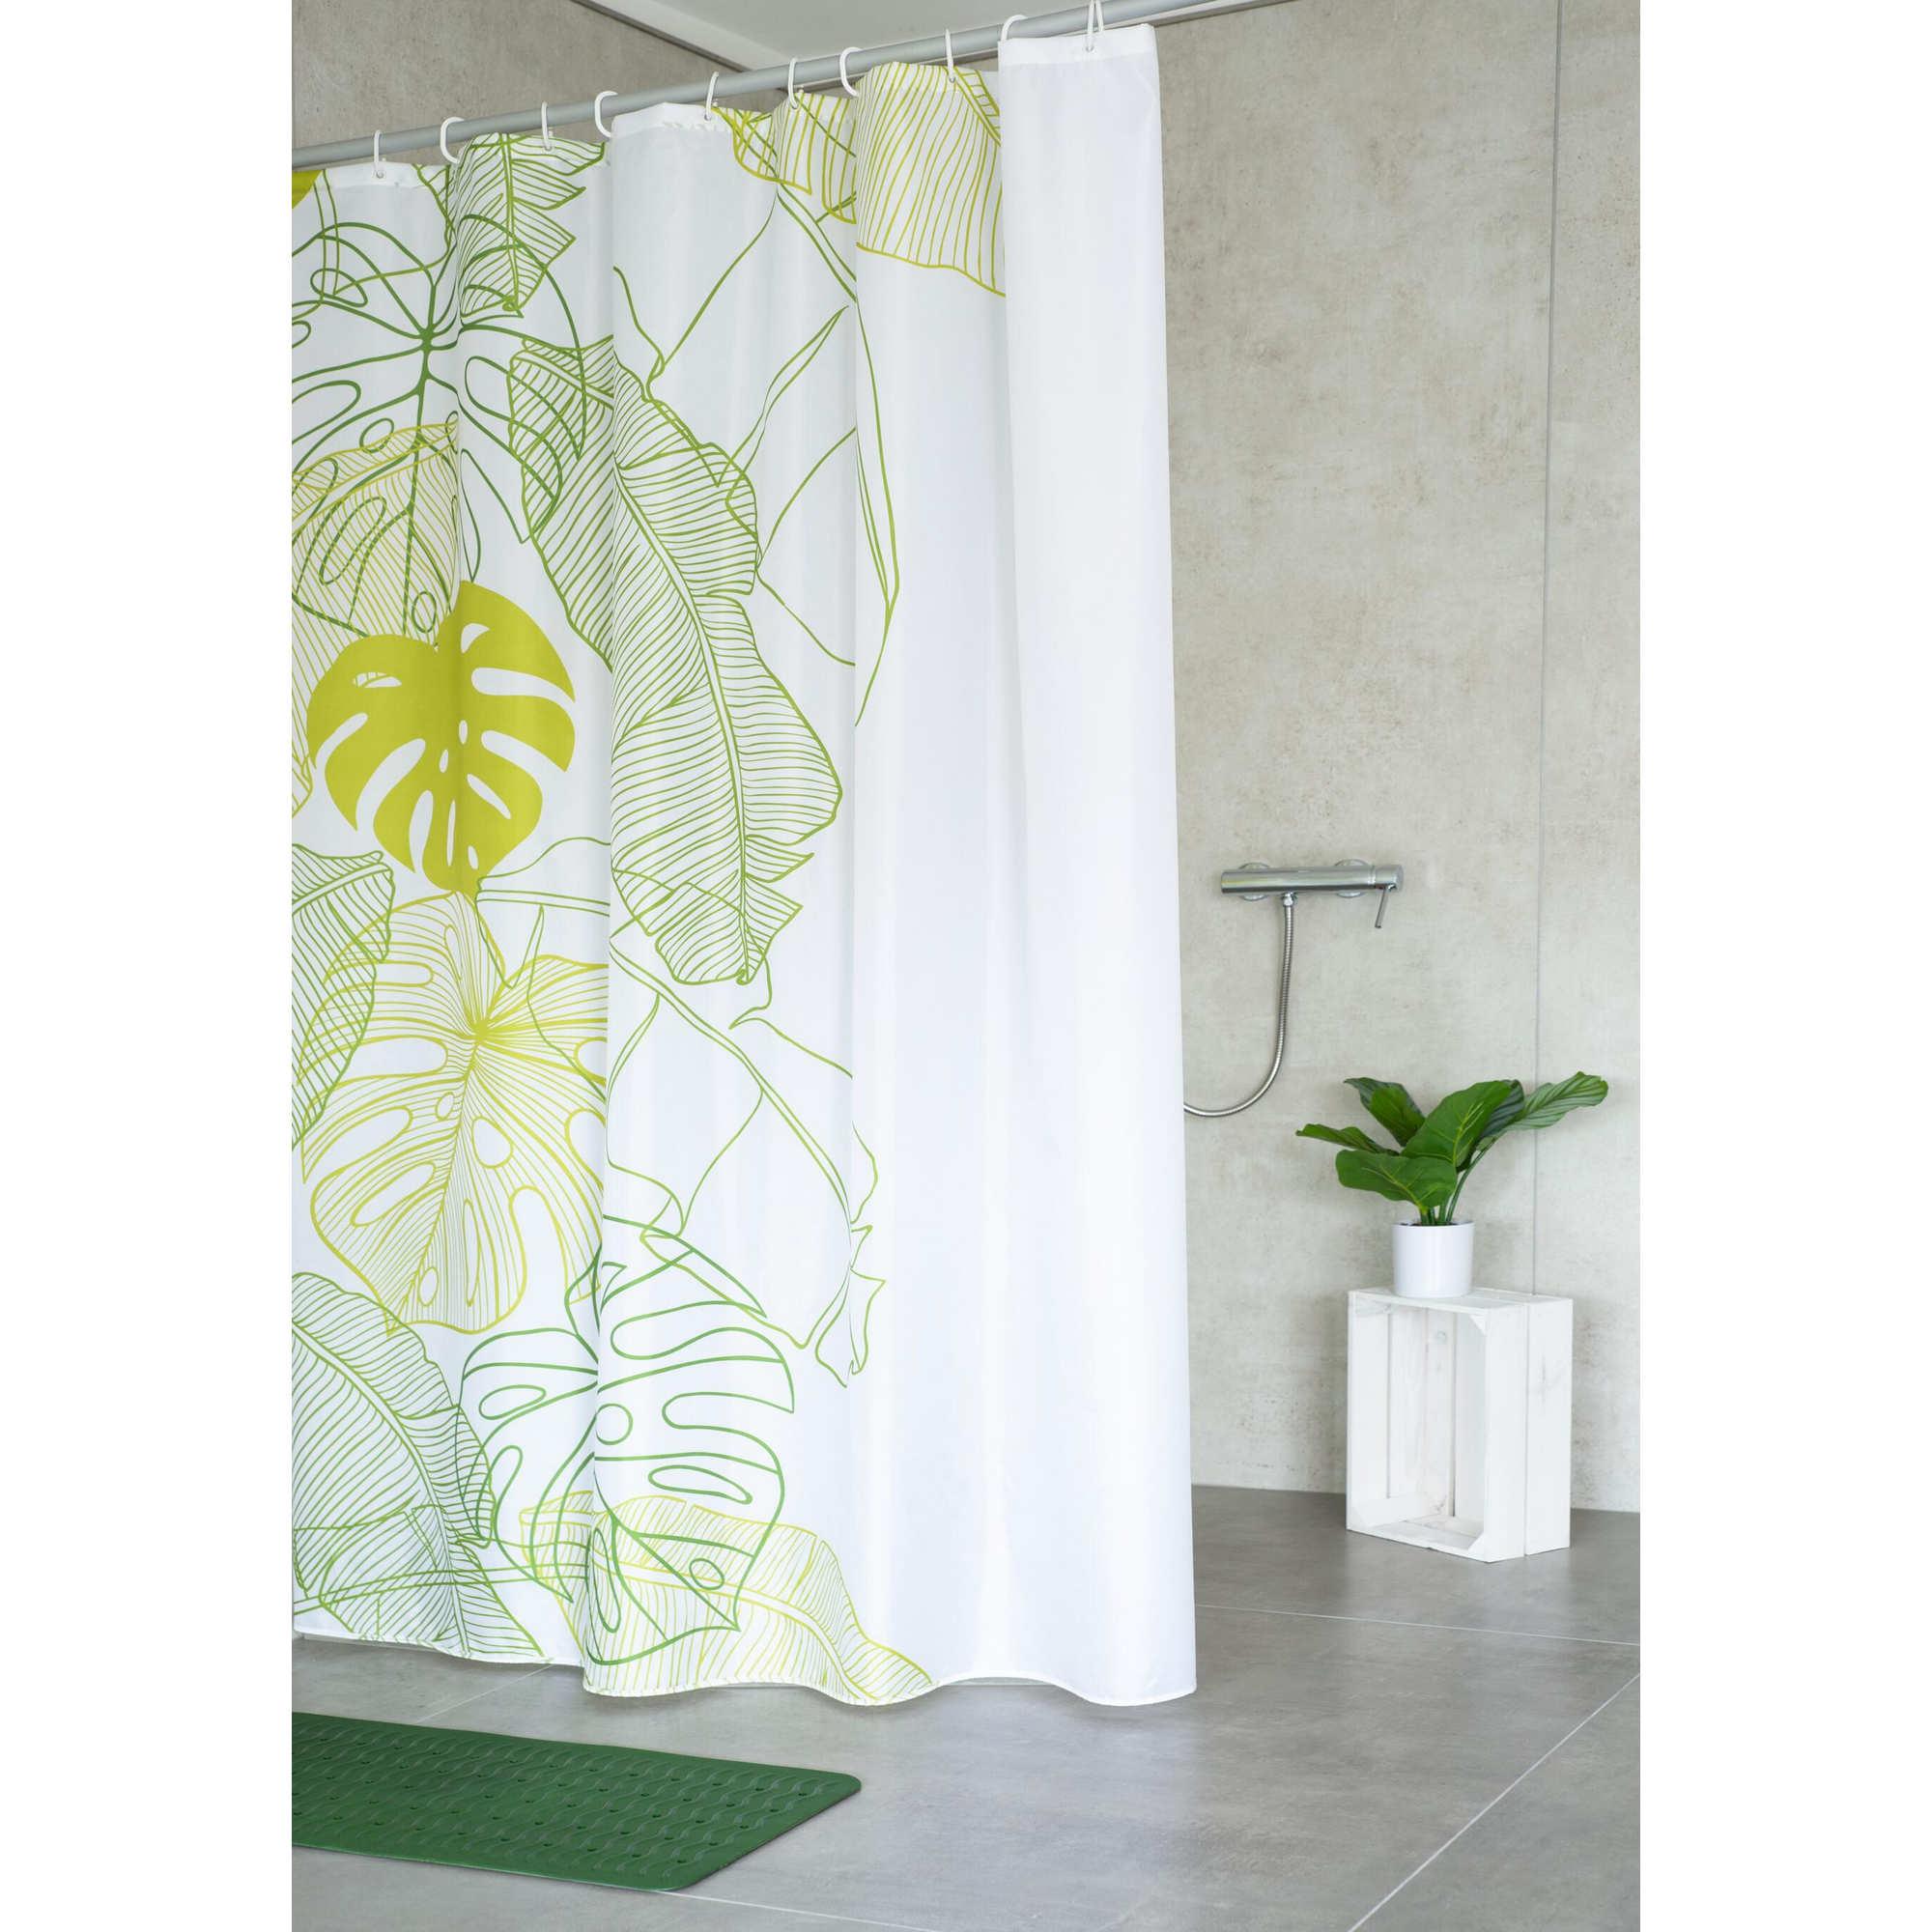 Duschvorhang 'Tropical' Textil grün 180 x 200 cm + product picture